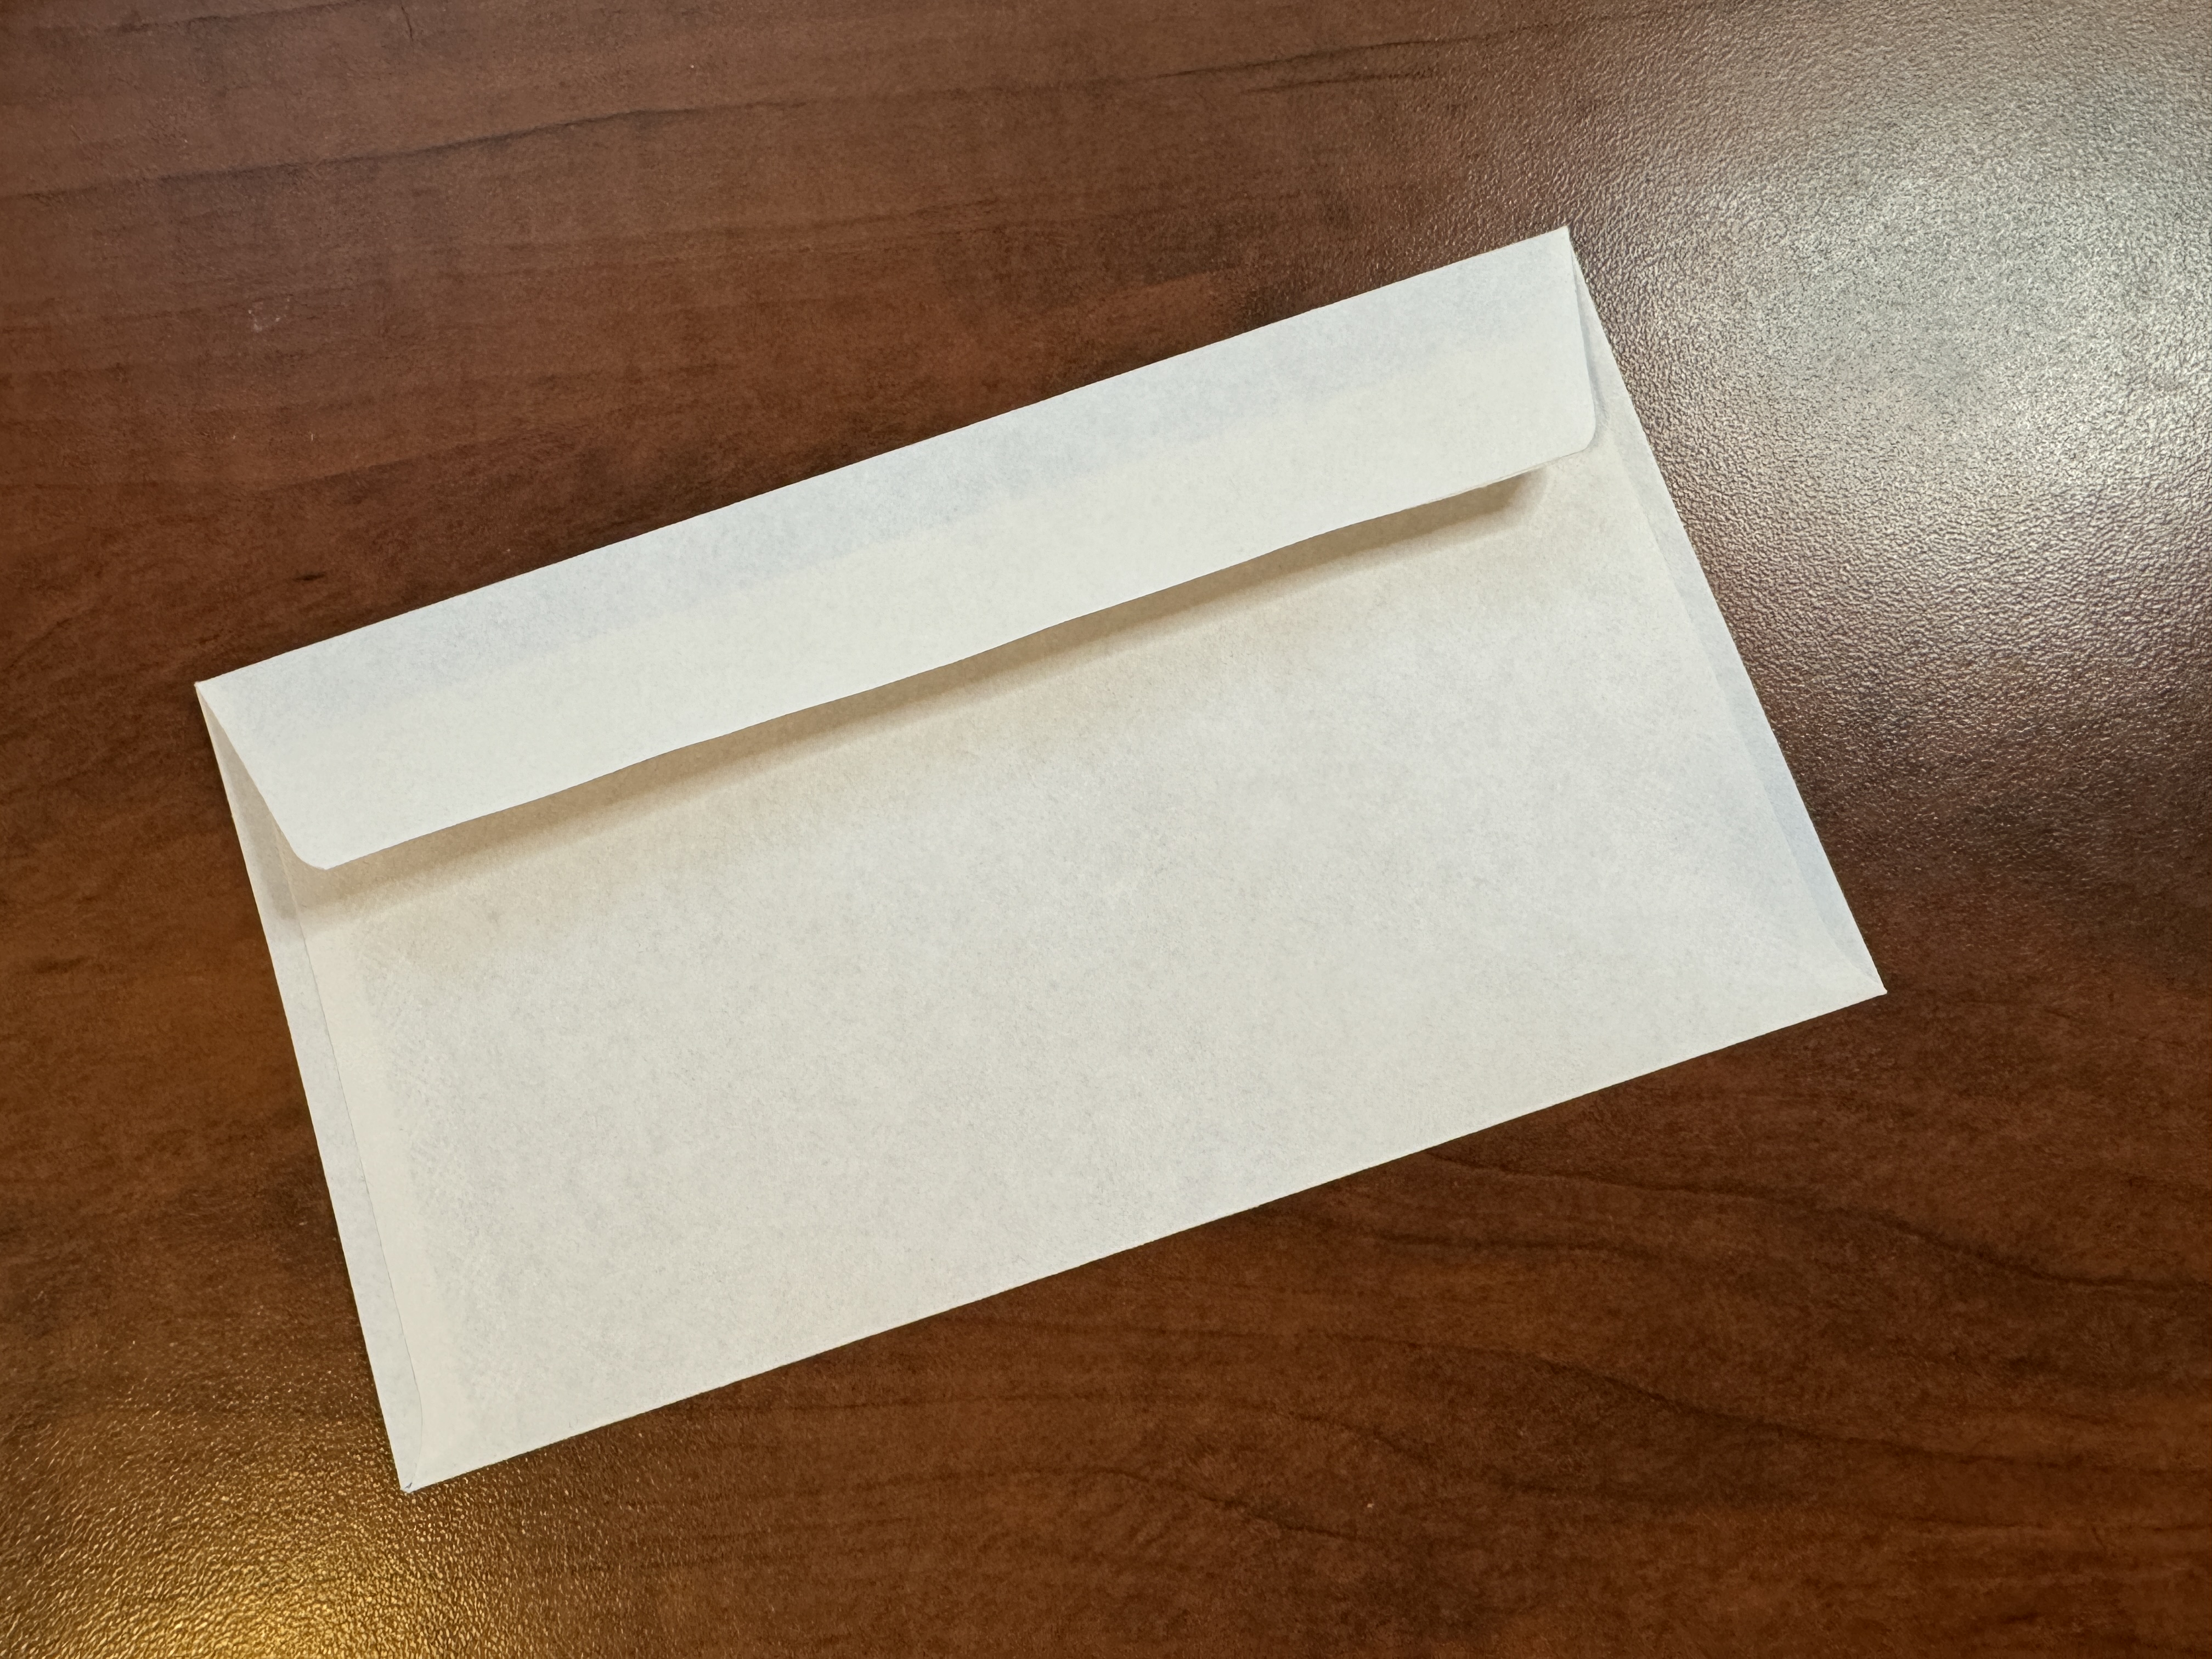 A plain white envelope.